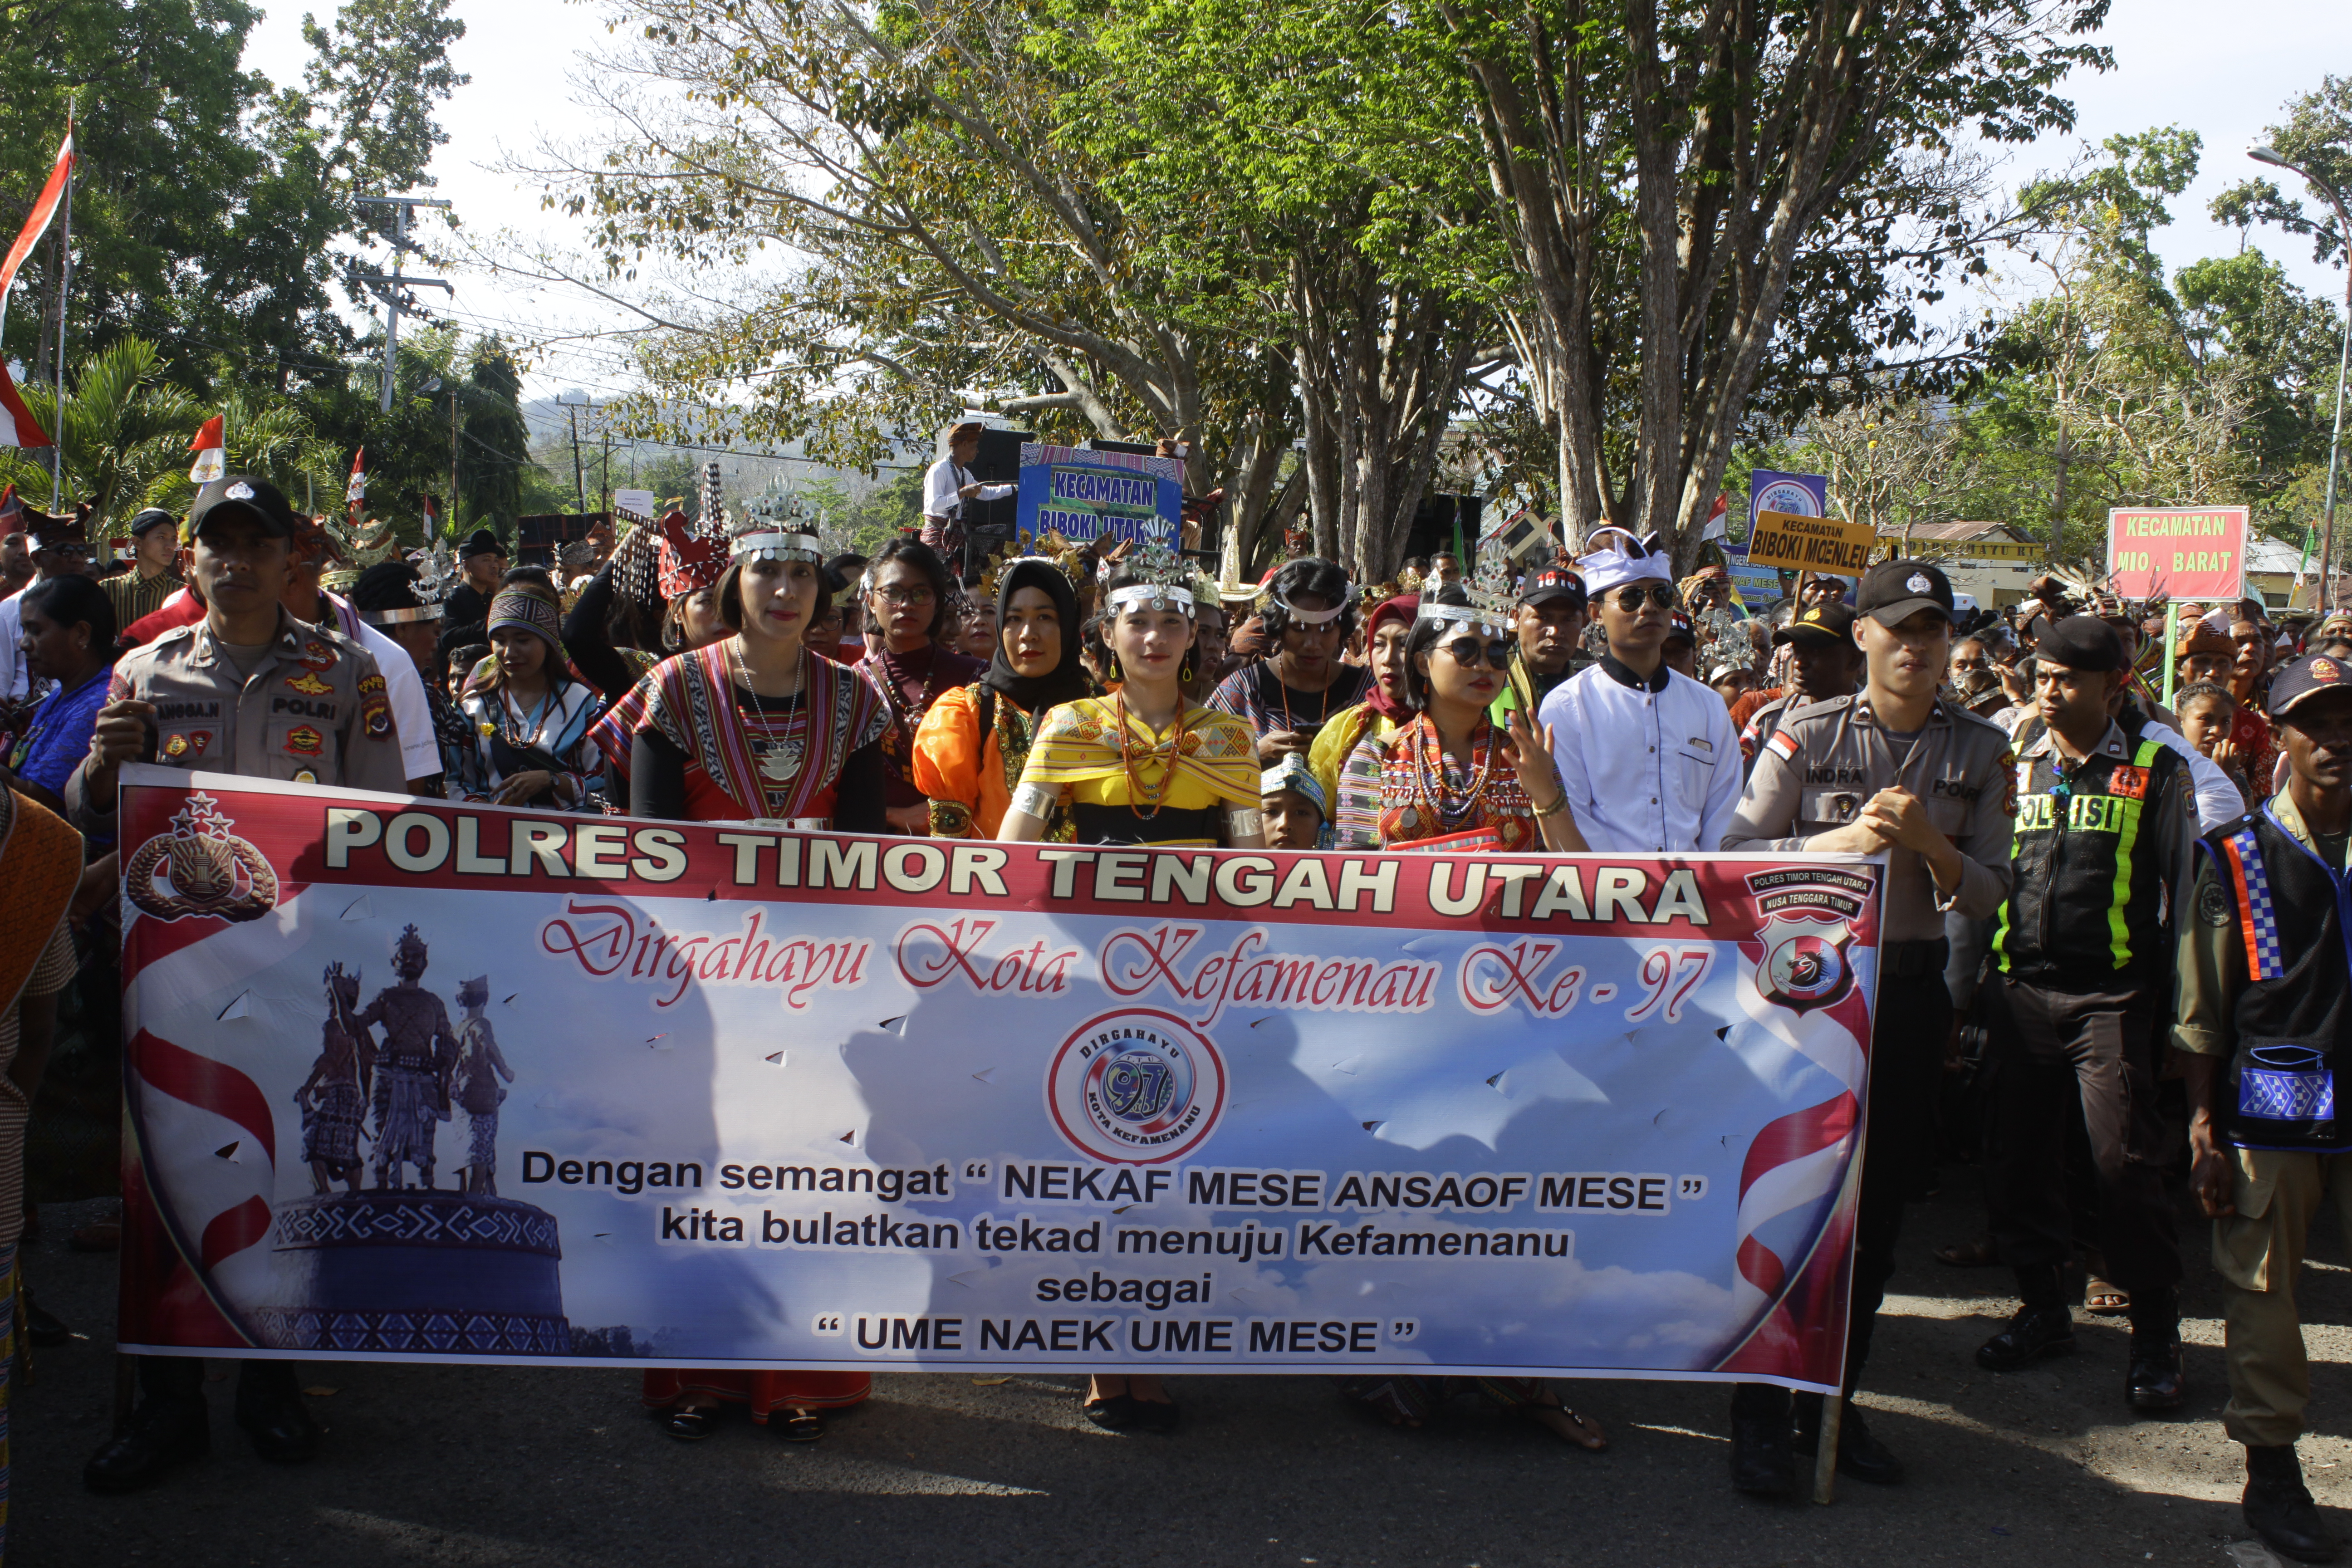 Peringati HUT Kota Sari ke 97, Polres TTU Turut Meriahkan Kegiatan Karnaval